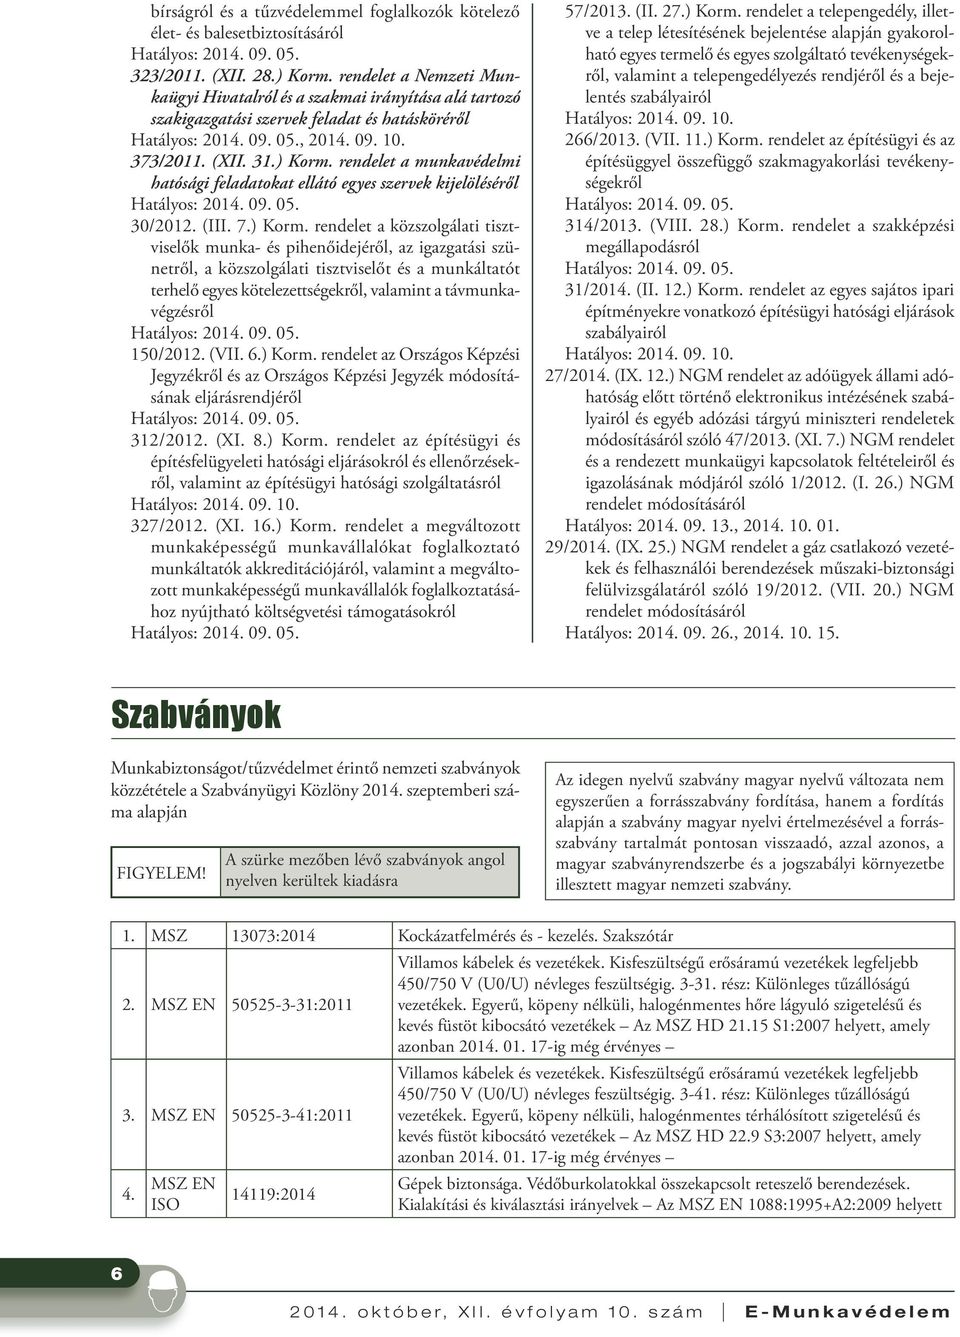 rendelet a munkavédelmi hatósági feladatokat ellátó egyes szervek kijelöléséről 30/2012. (III. 7.) Korm.